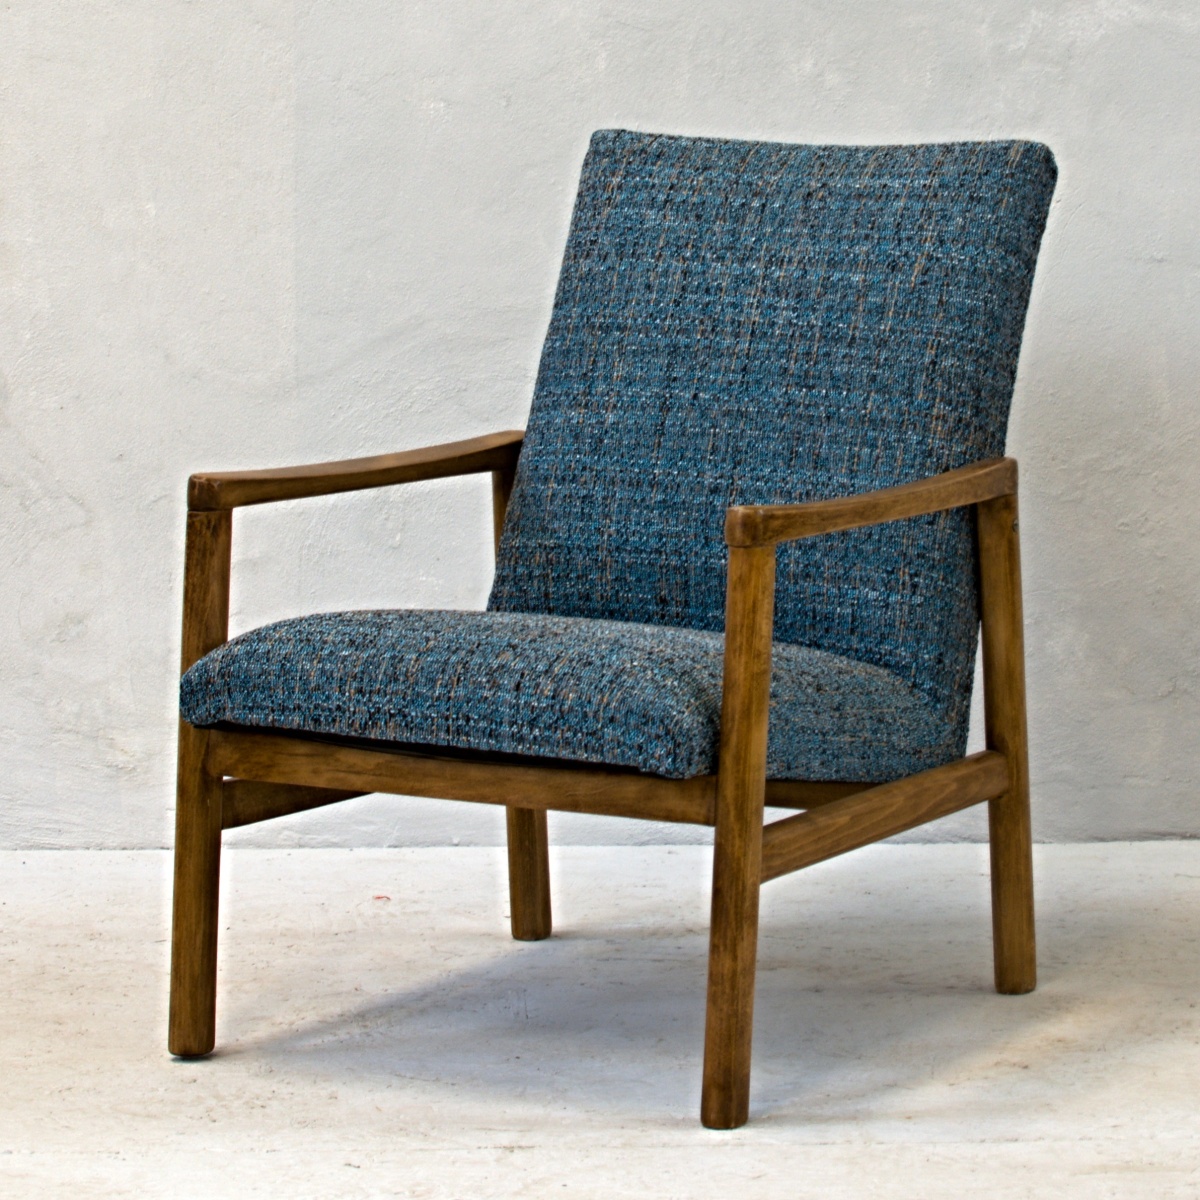 modrá křesílka čalounění a dřevěná konstrukce křeslo modrá barva retro kus nábytku